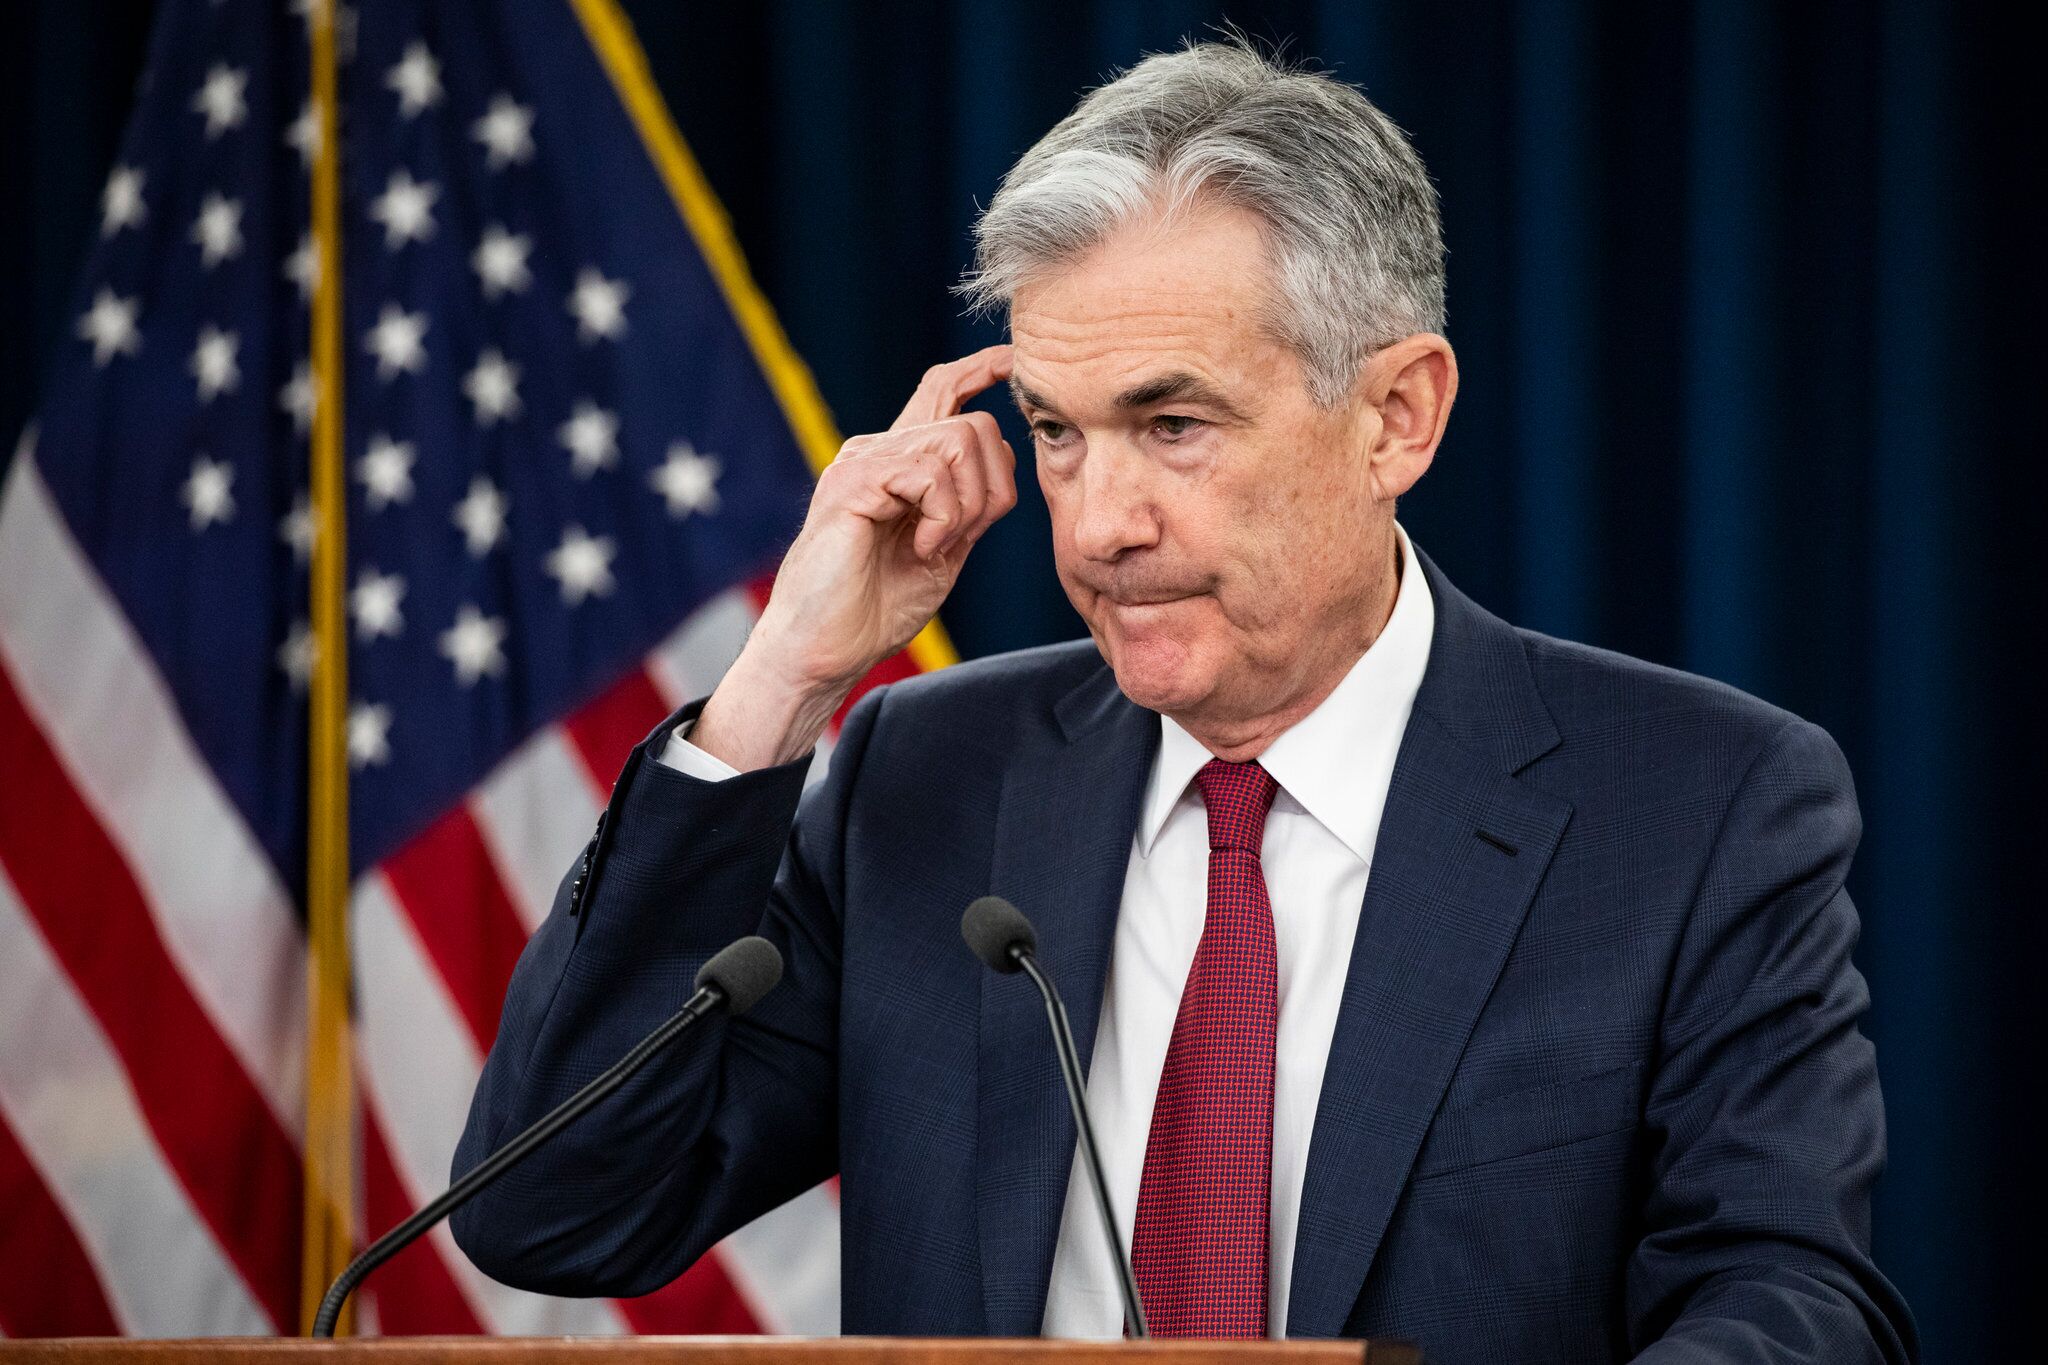 Lợi tức kho bạc Mỹ tăng khi các nhà đầu tư phân tích dữ liệu kinh tế và tất cả hướng tới hội nghị của Fed